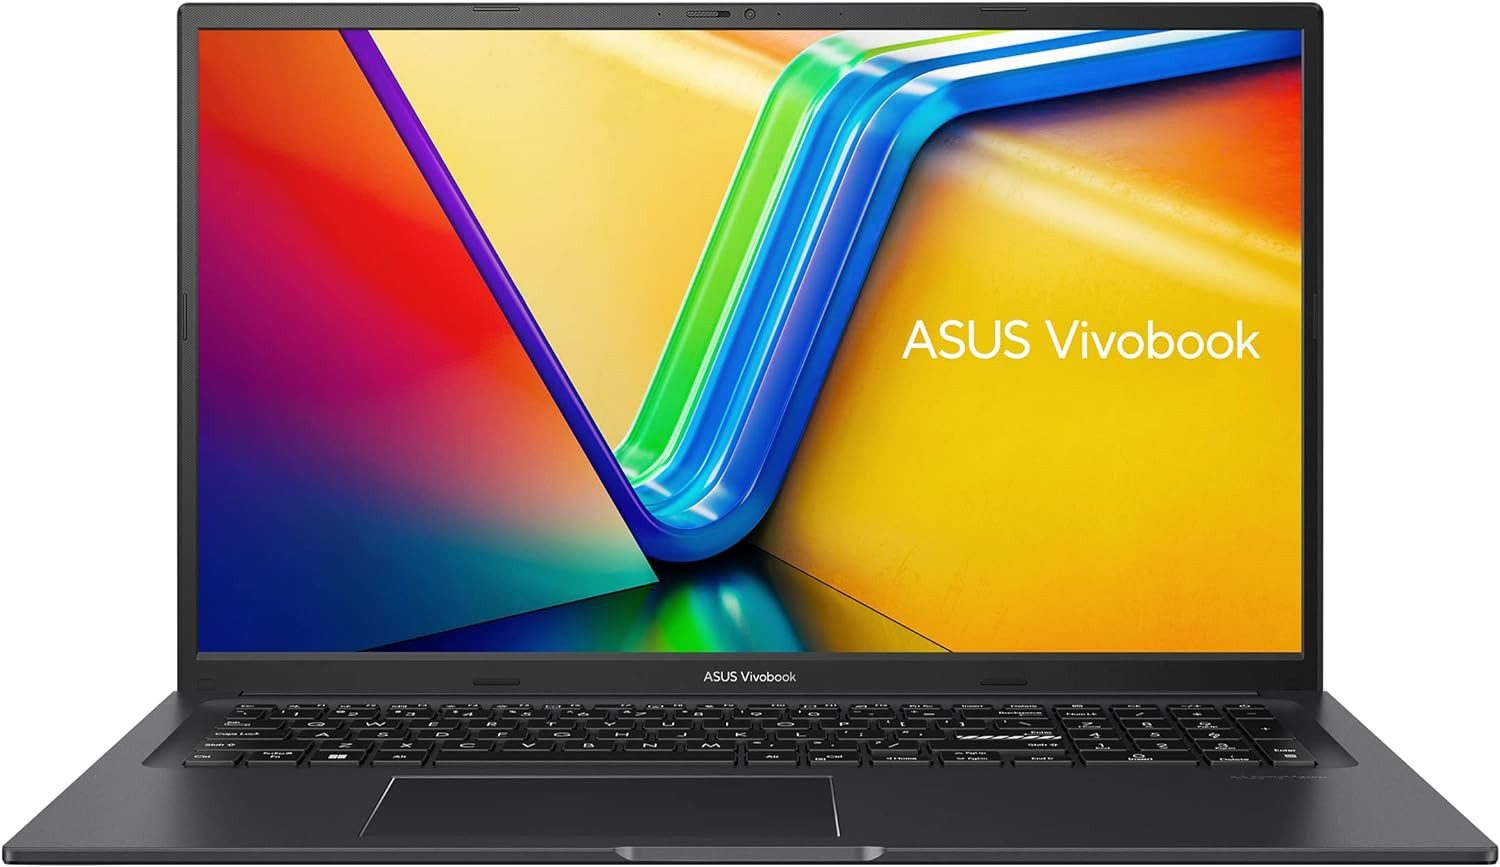 Asus Unvergleichliche Leistung Notebook (Intel 13900H, Iris X, 1000 GB SSD, 16GBRAM,Innovative Design & hochwertiger Technologie für Produktivität)